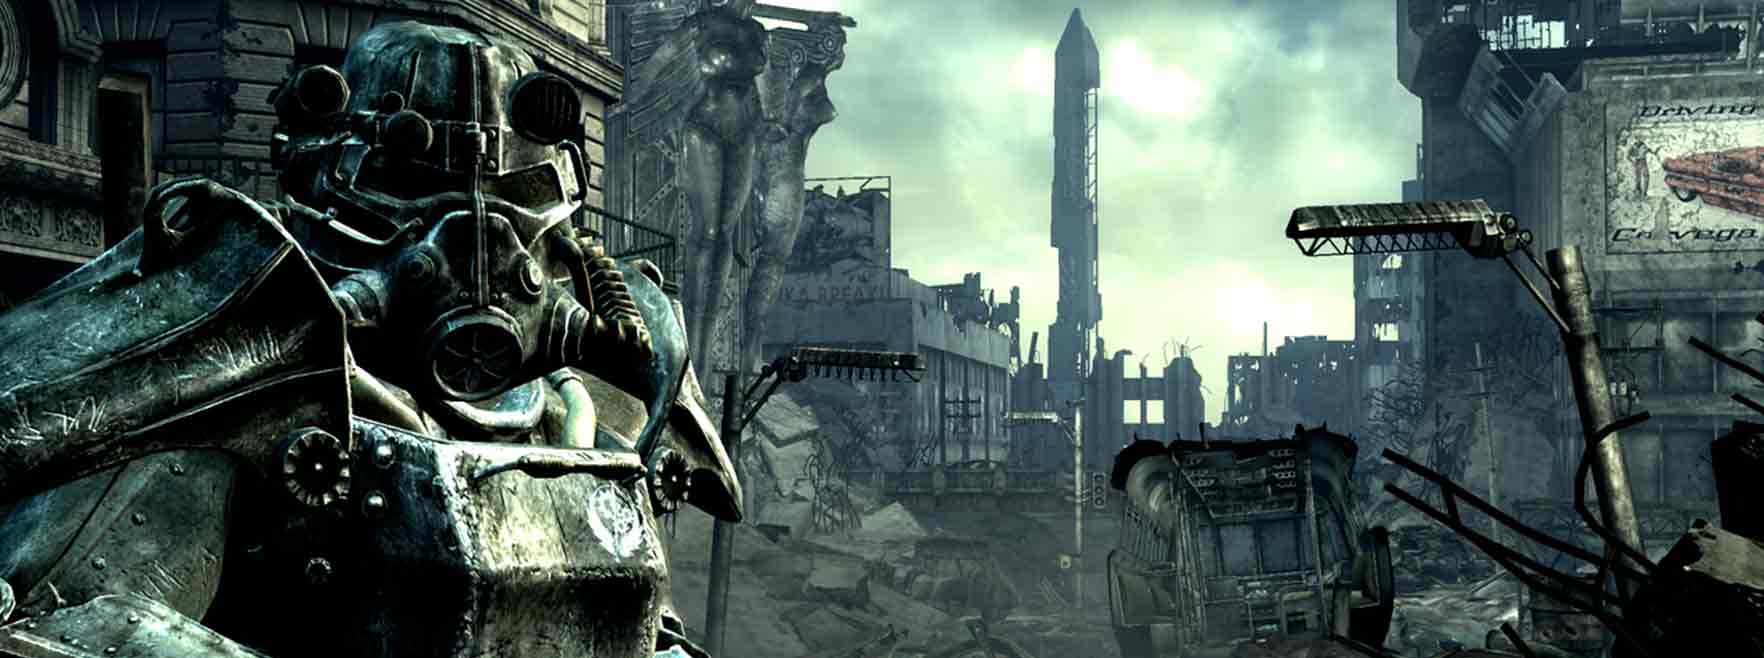 Снимают сериал по Fallout. Каким будет сюжет? 5 наших вариантов 2